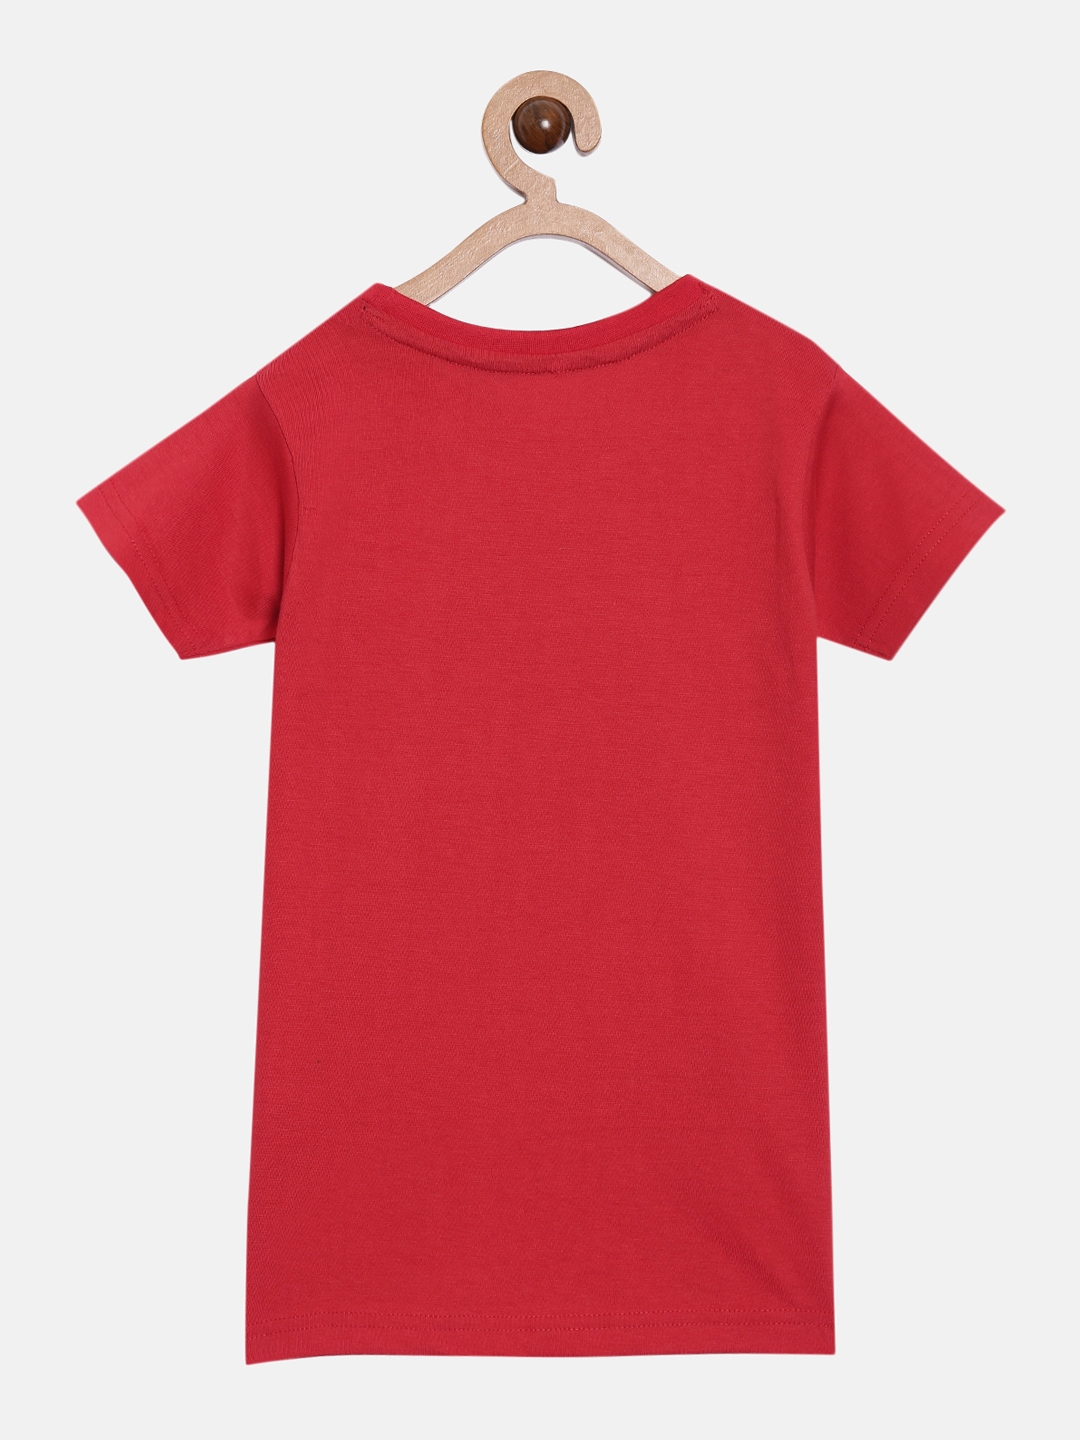 Peejas | Peejas Kids Boys 100% Cotton Chest Printed Short Sleeve Tshirt 6